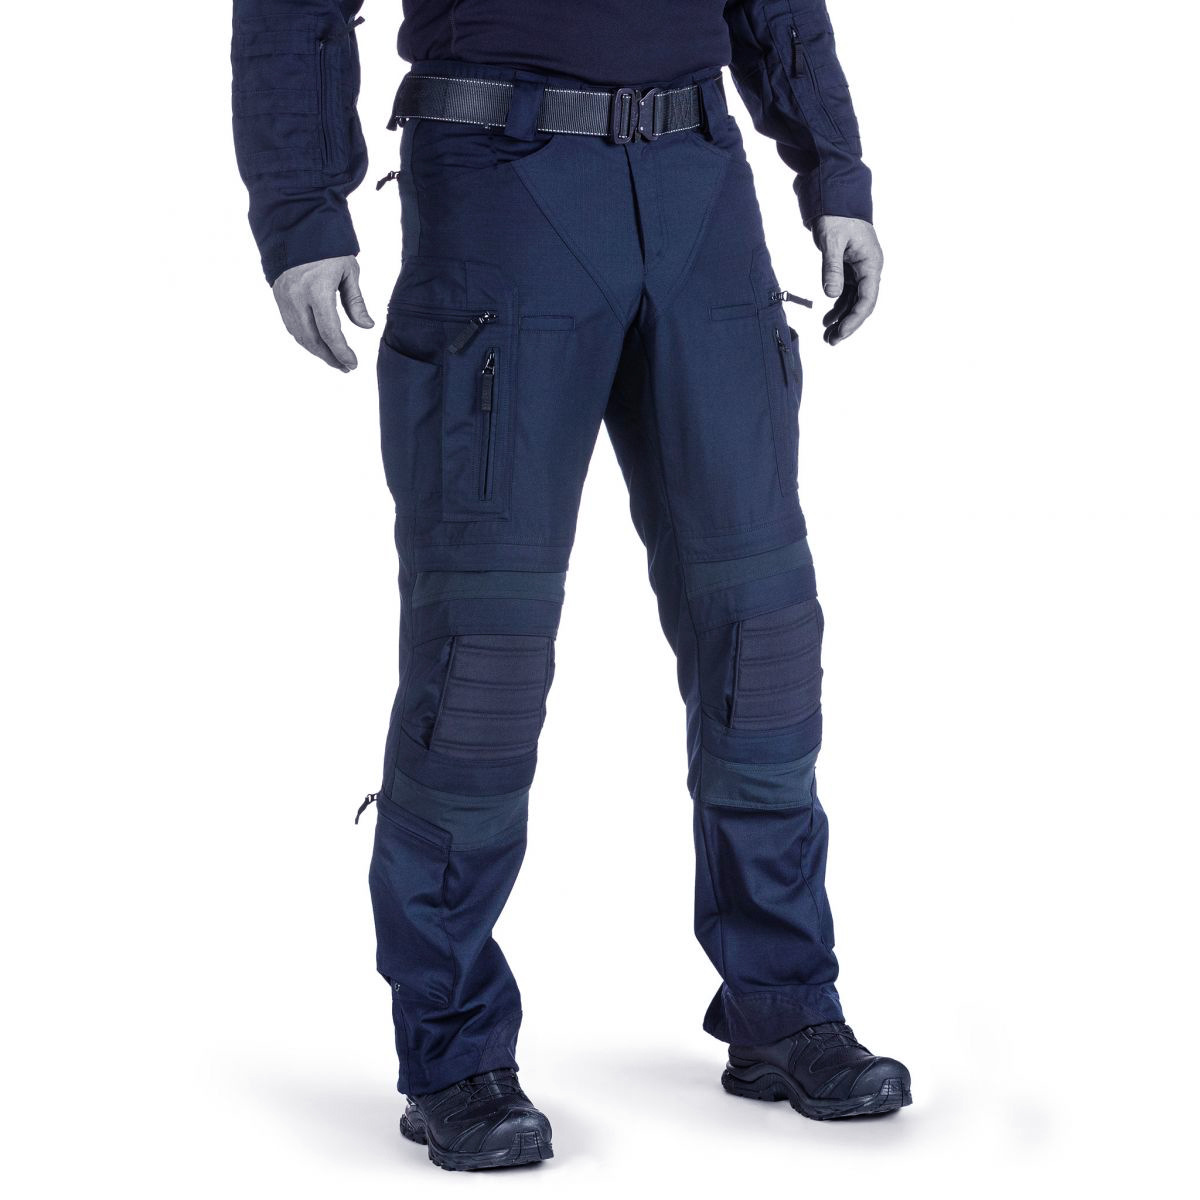 Men's Outdoor Waterproof Wear-resistant Chic Multi-pocket Tactical Pants